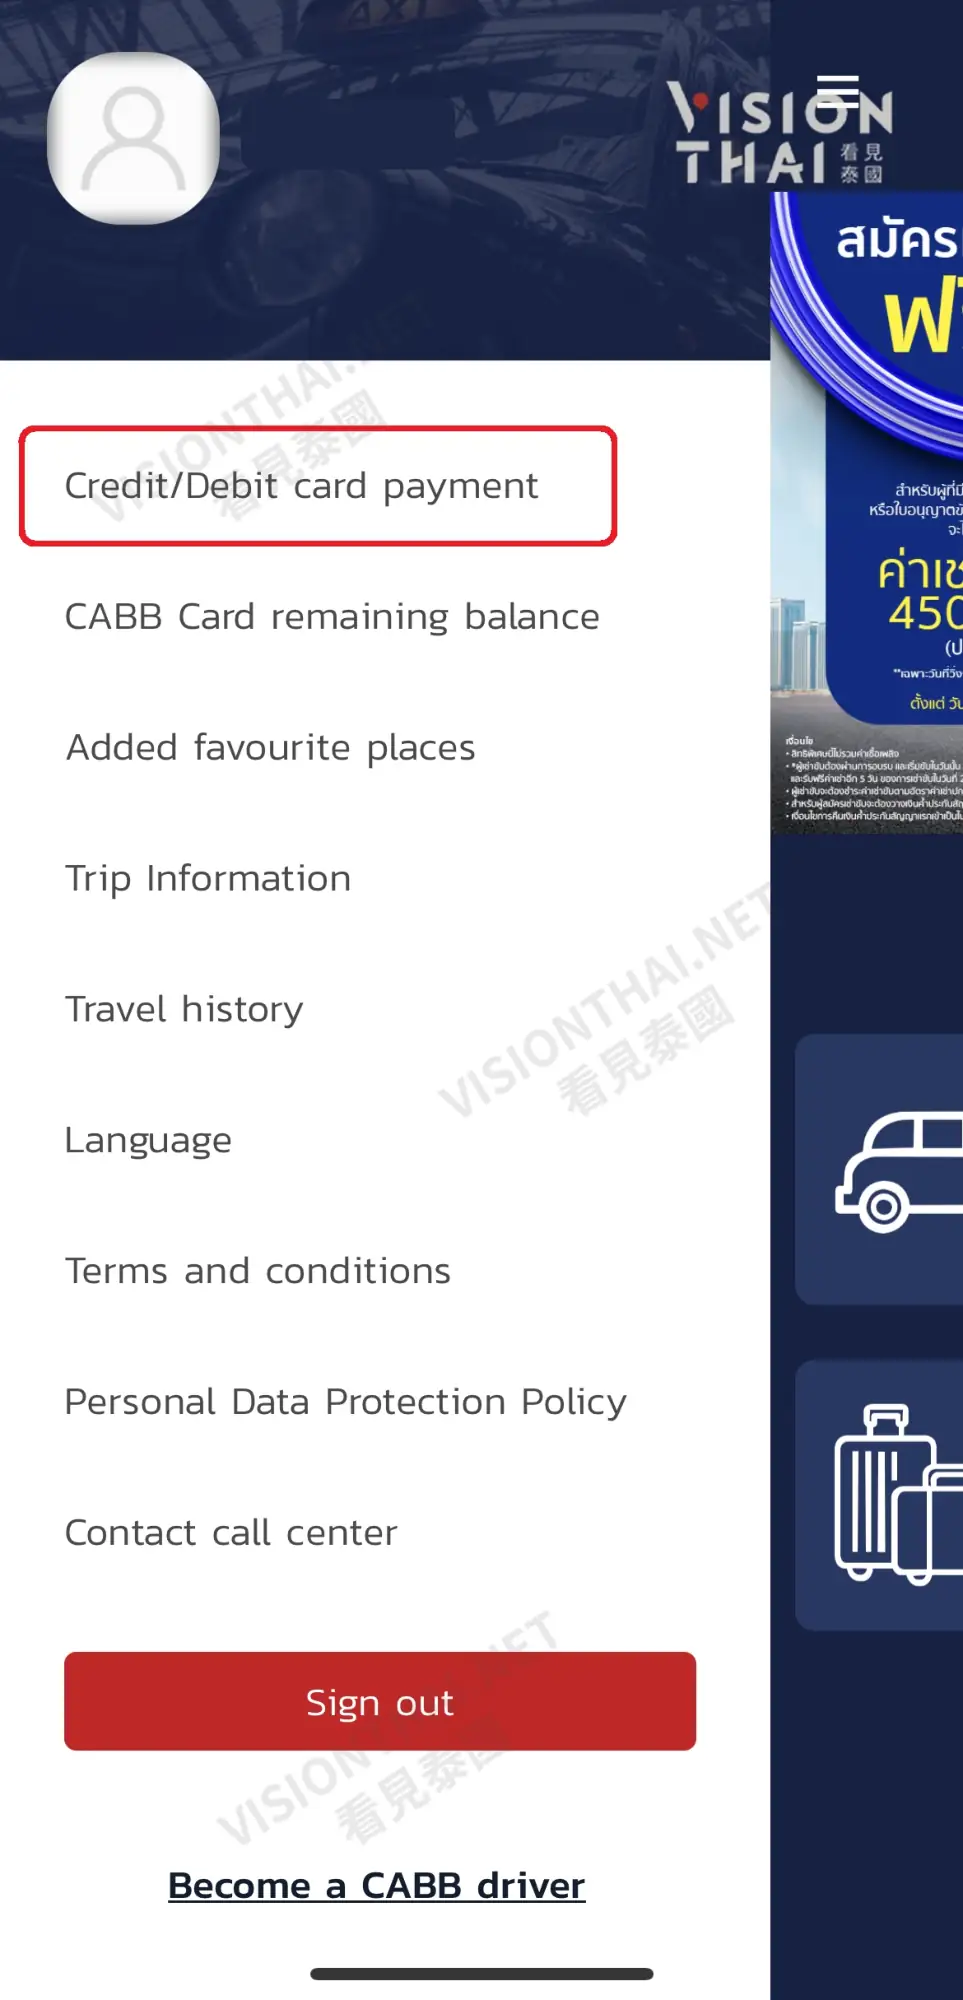 泰国打车App CABB使用教学（图片来源：Vision Thai 看见泰国）